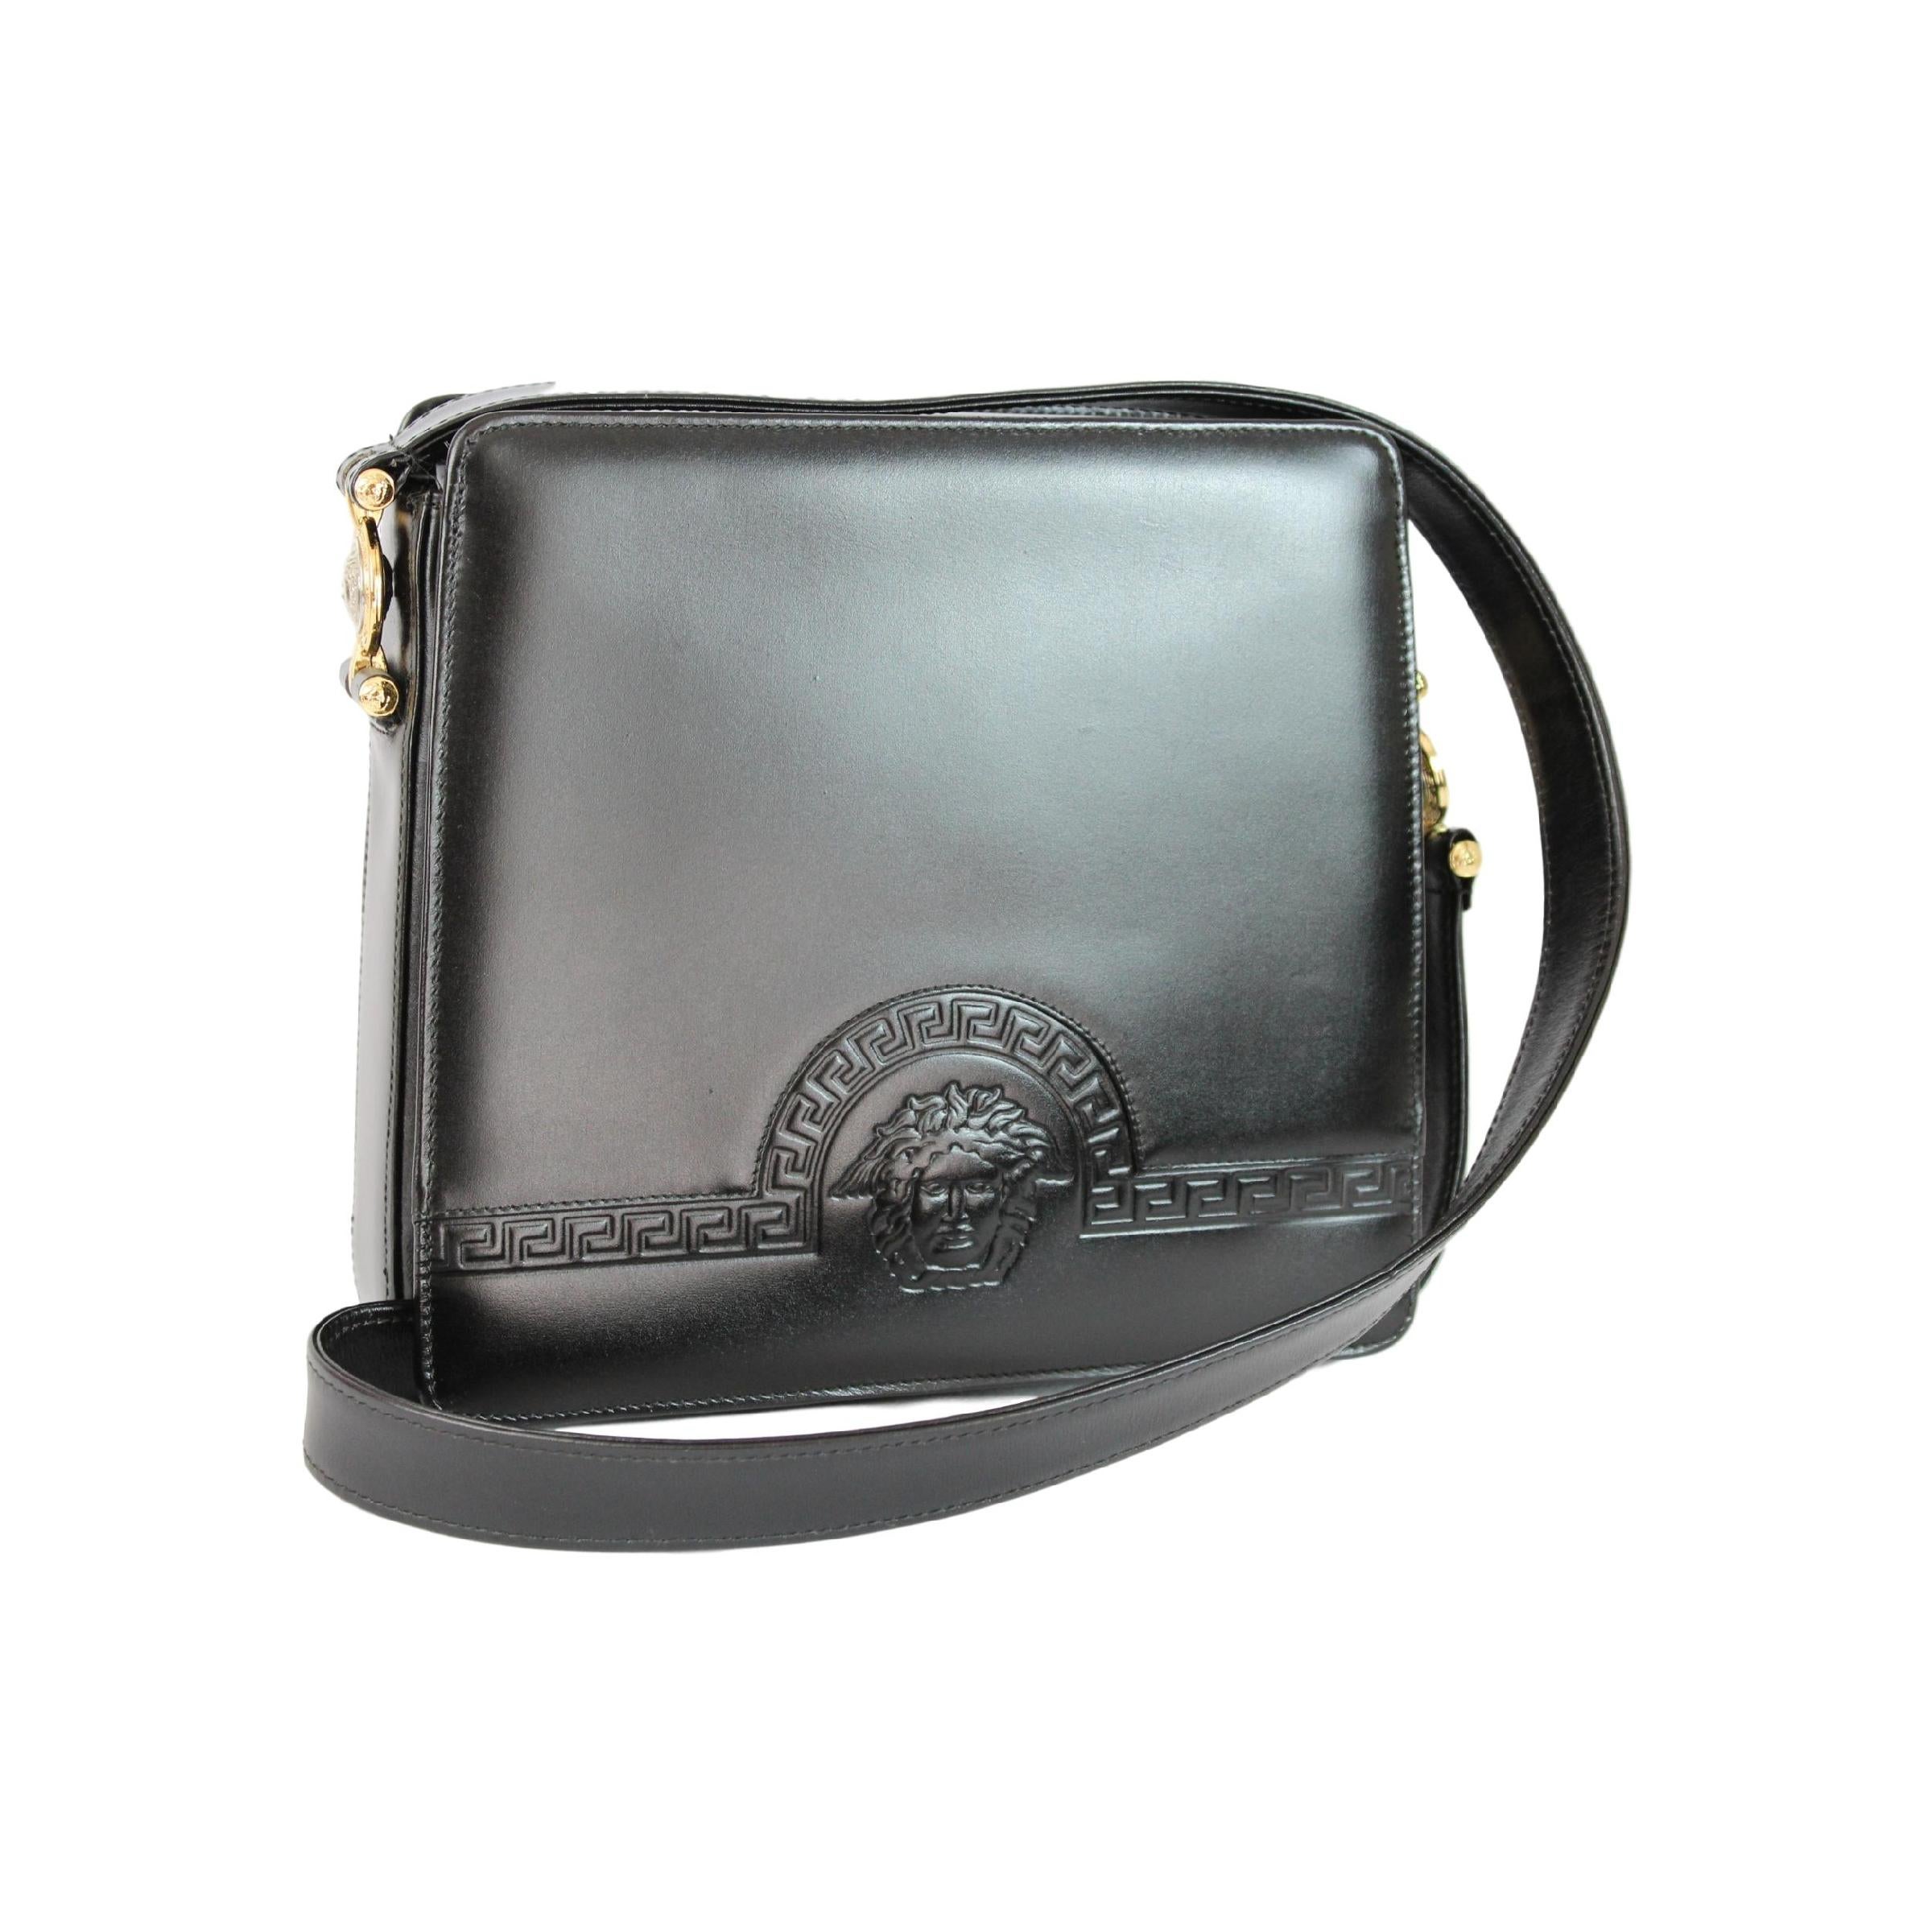 Gianni Versace Shoulder Bag Leather Vintage Black